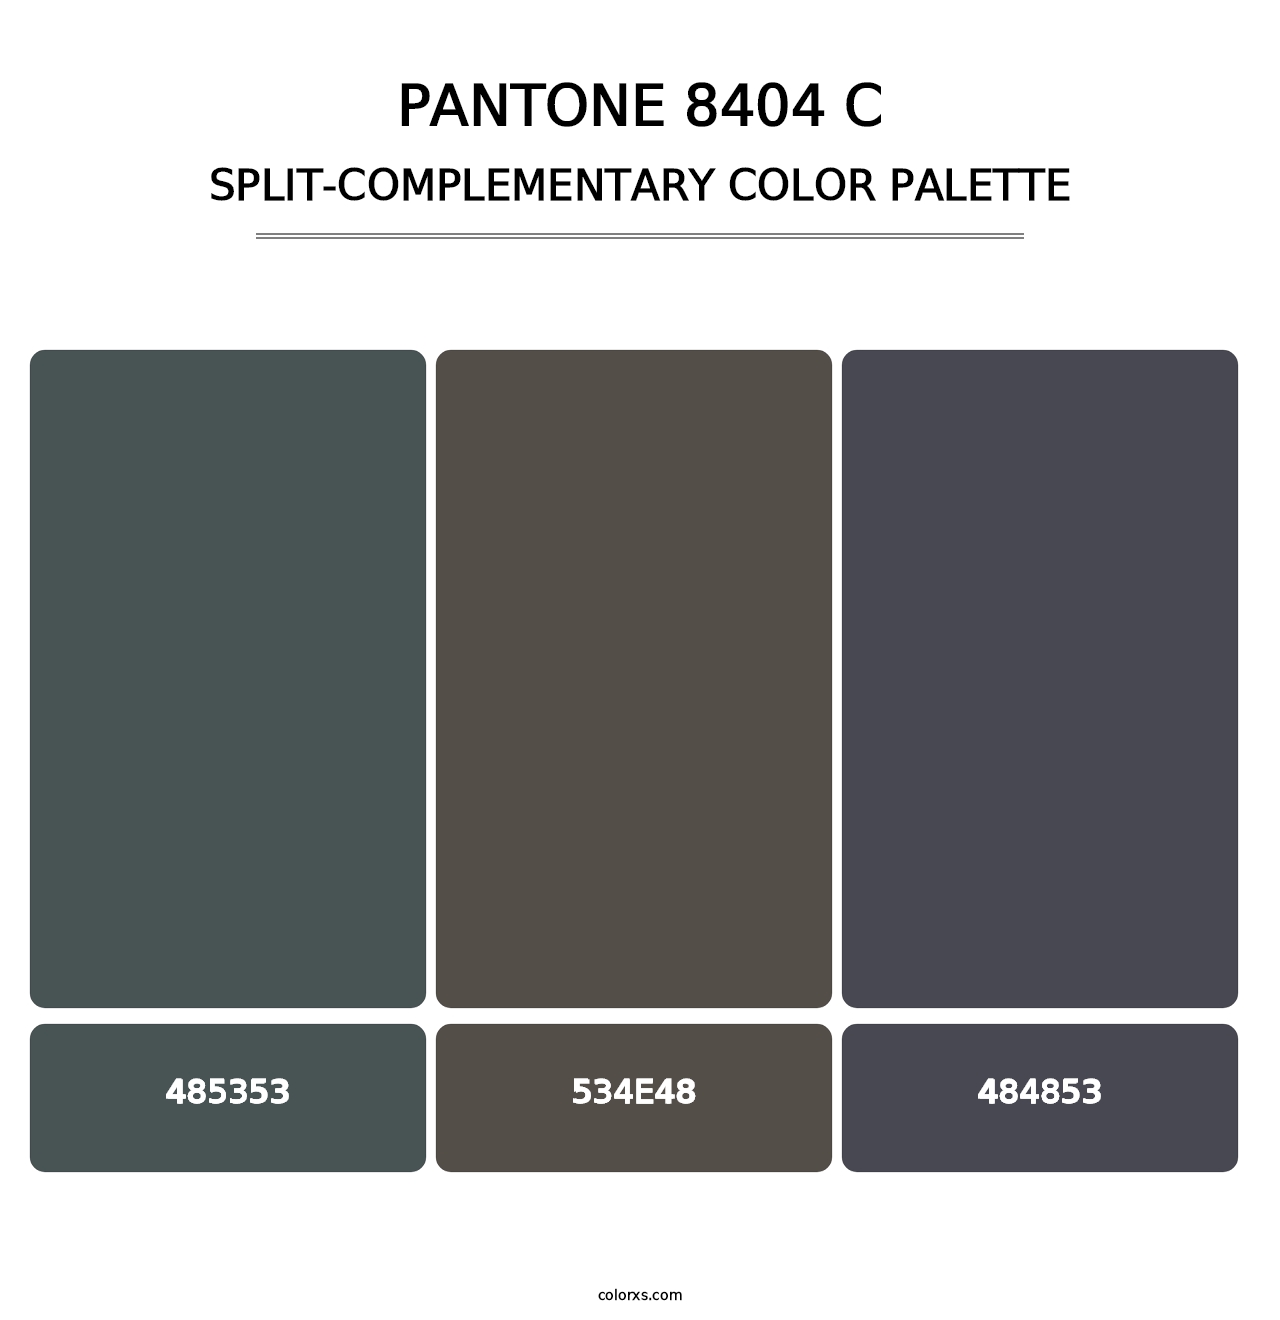 PANTONE 8404 C - Split-Complementary Color Palette